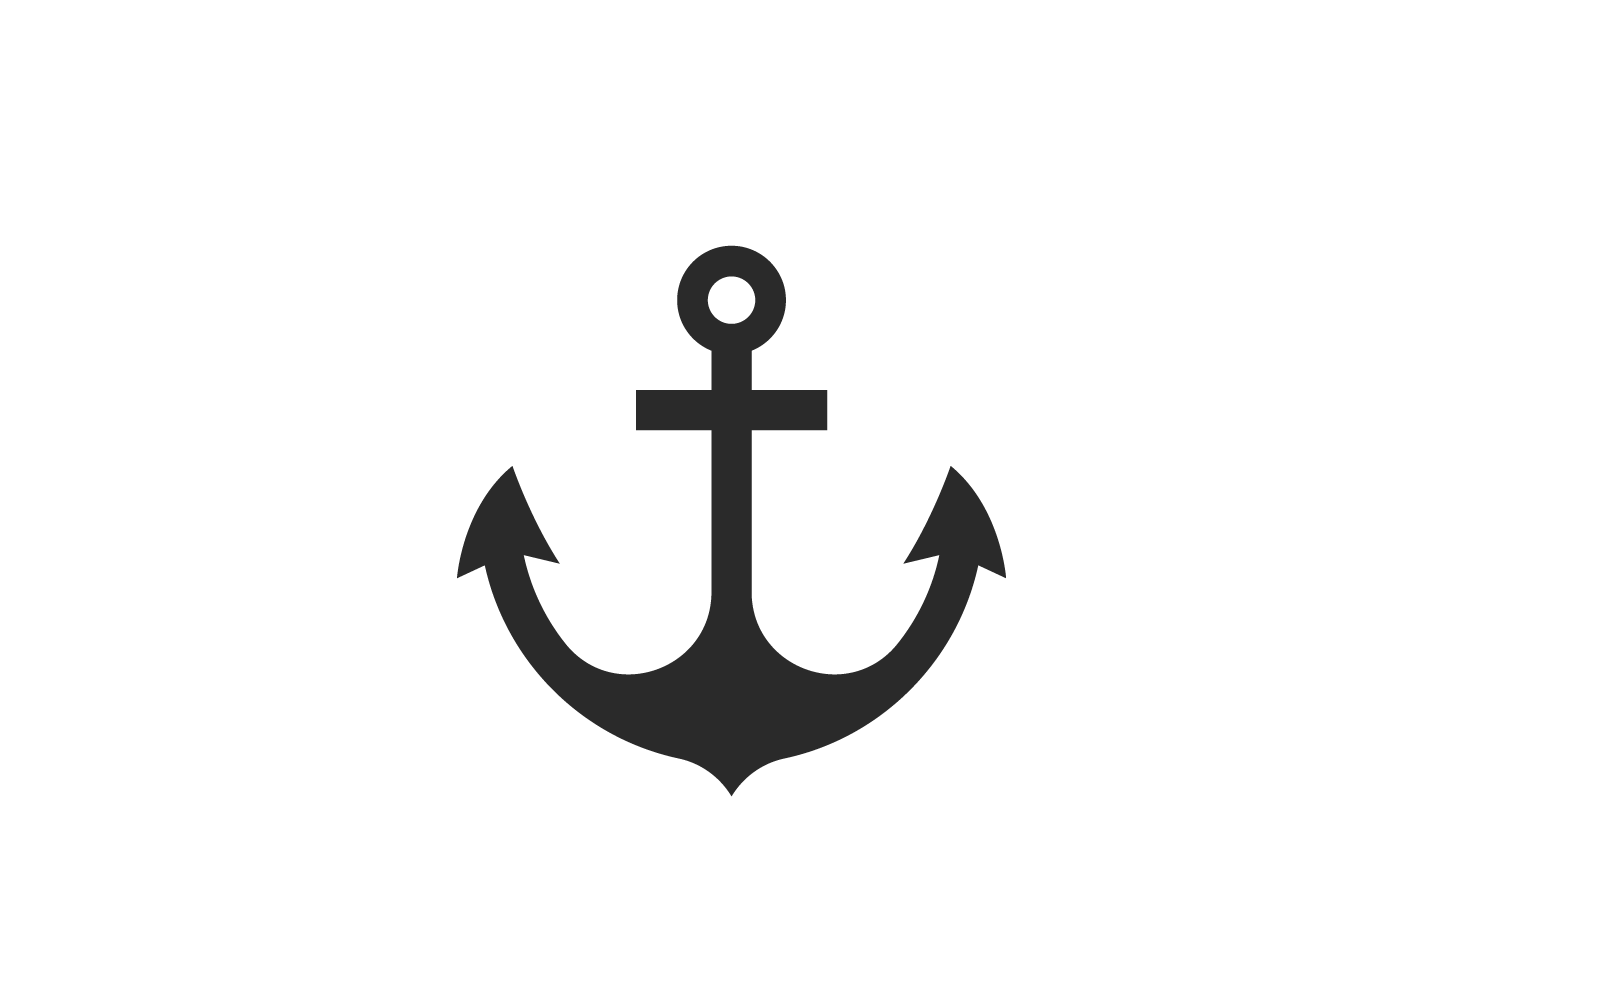 Anchor logo design vector illustration template